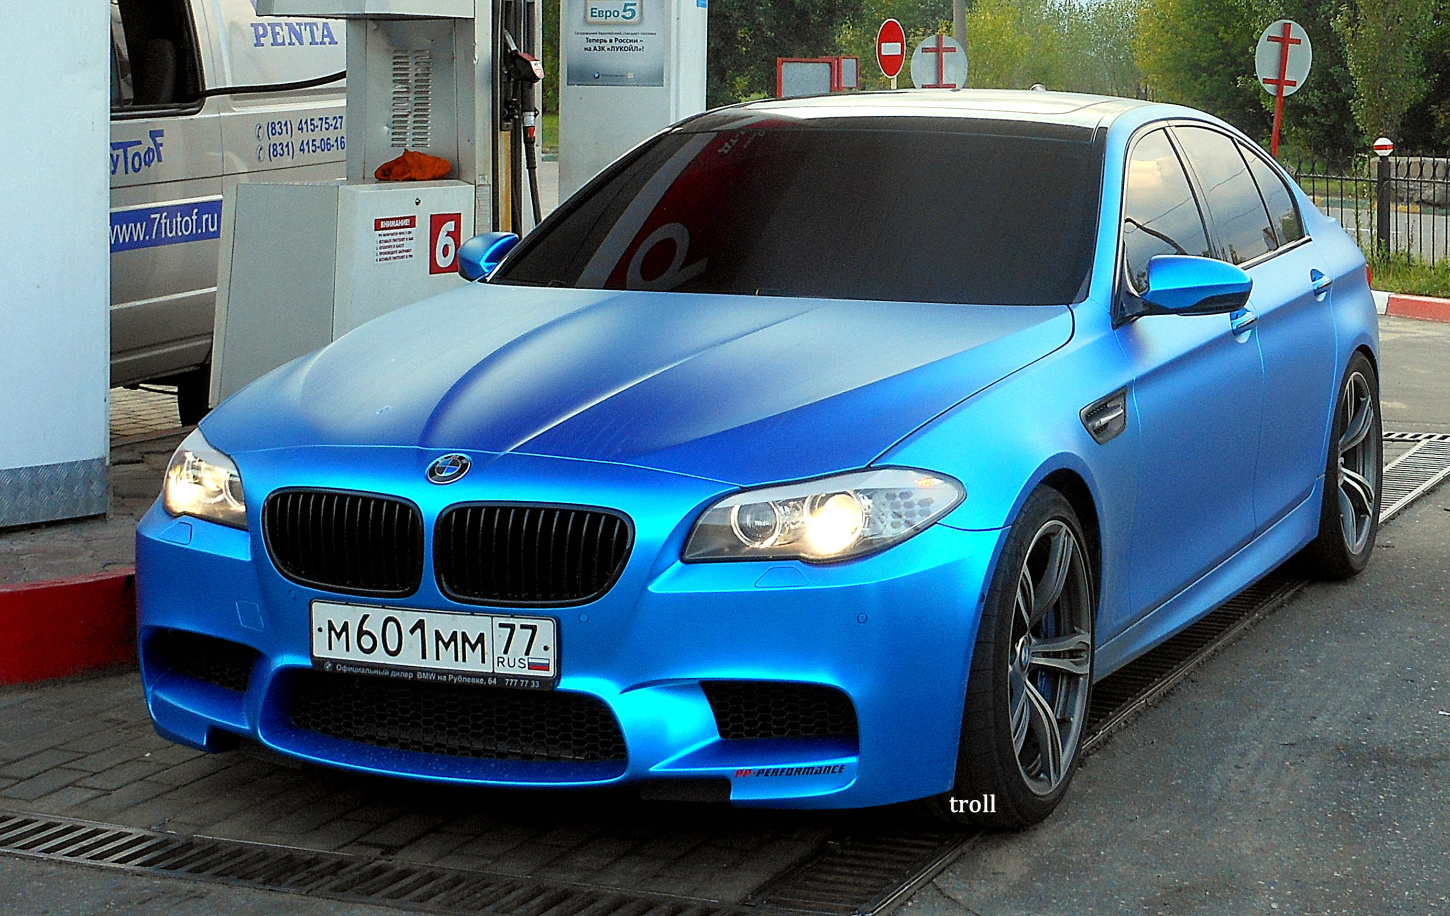 Бмв м5 москва. BMW m5 f10. BMW m5 f10 синяя. BMW m5 f10 синяя матовая. BMW f10 синий матовый.